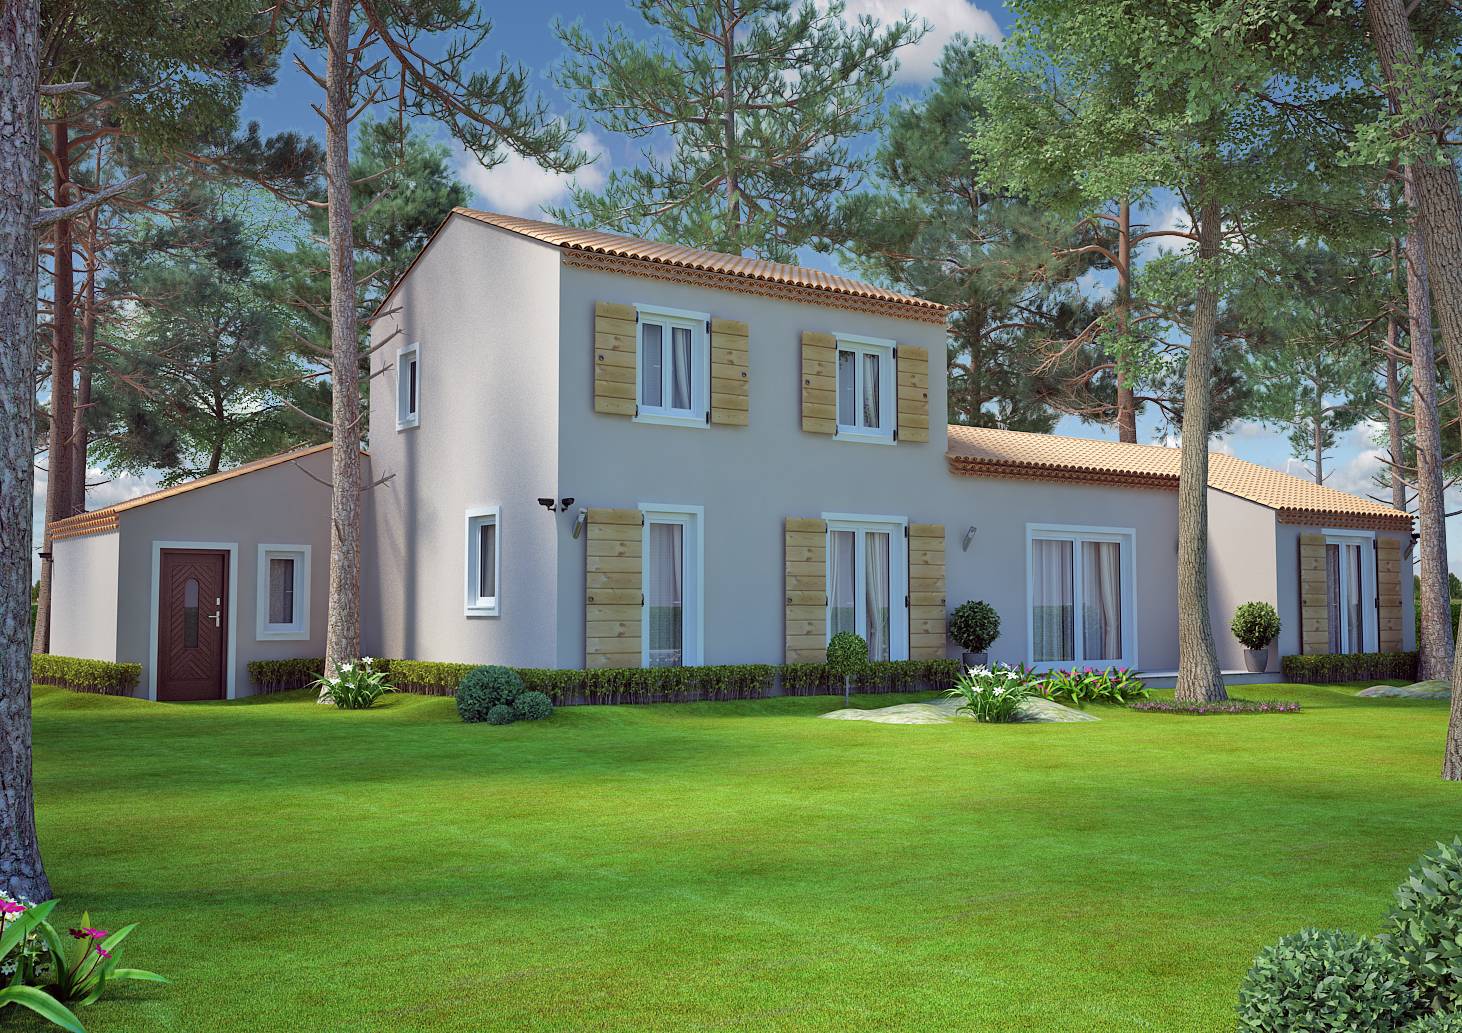 Modèle de villa de type traditionnel de 115M2 à étage dans les Bouches du Rhone et le Vaucluse